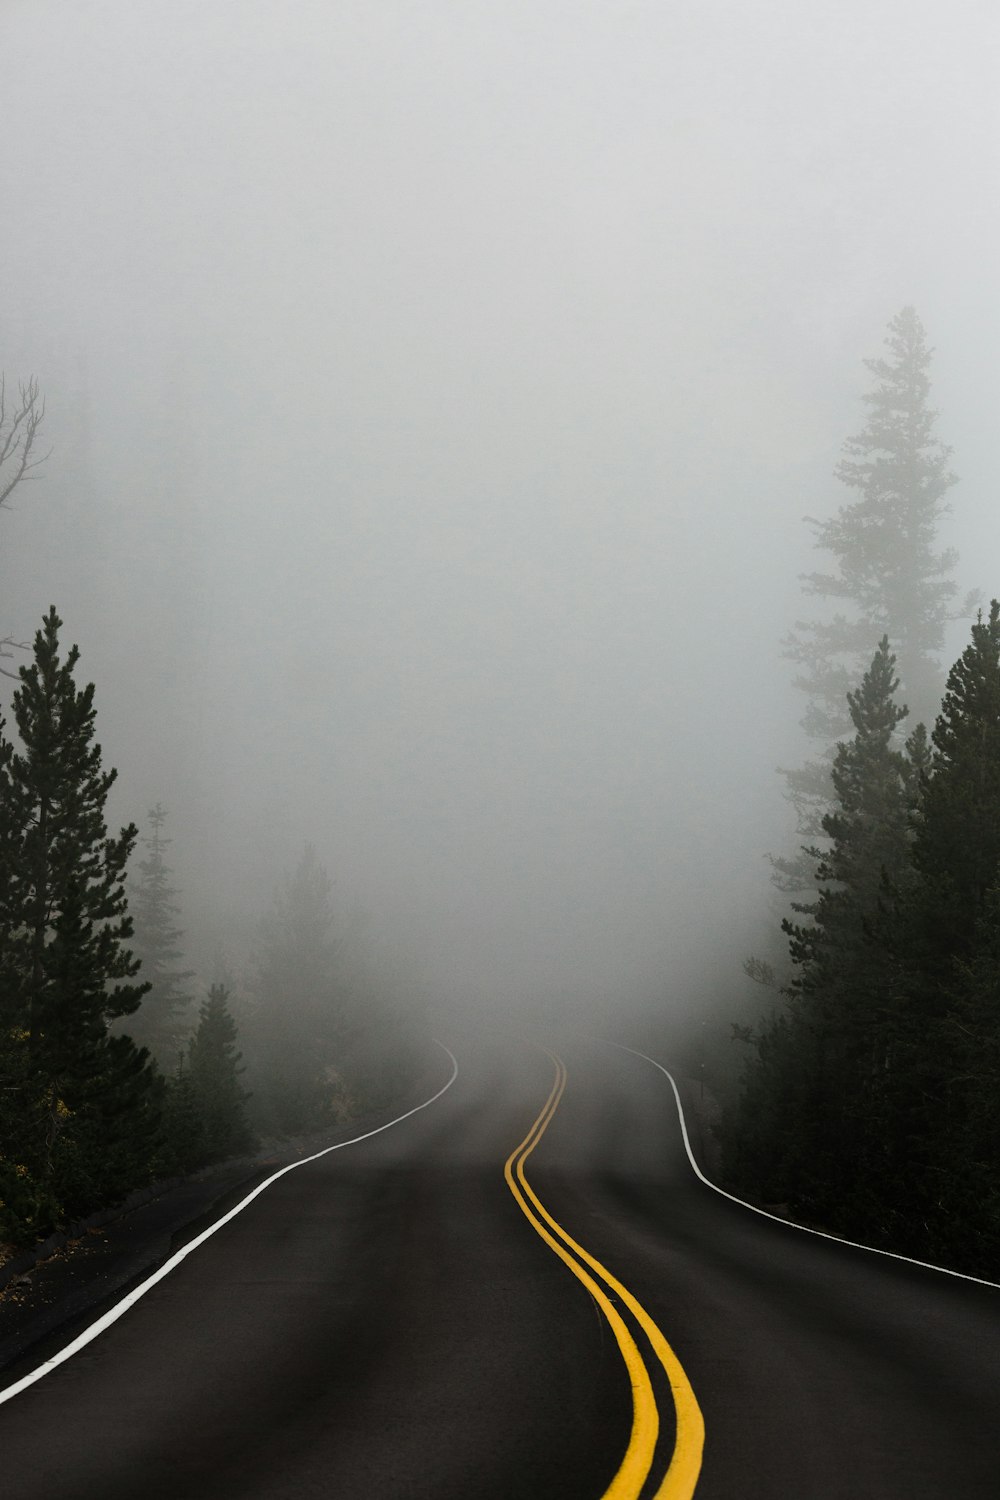 strada vuota circondata da alberi con nebbia